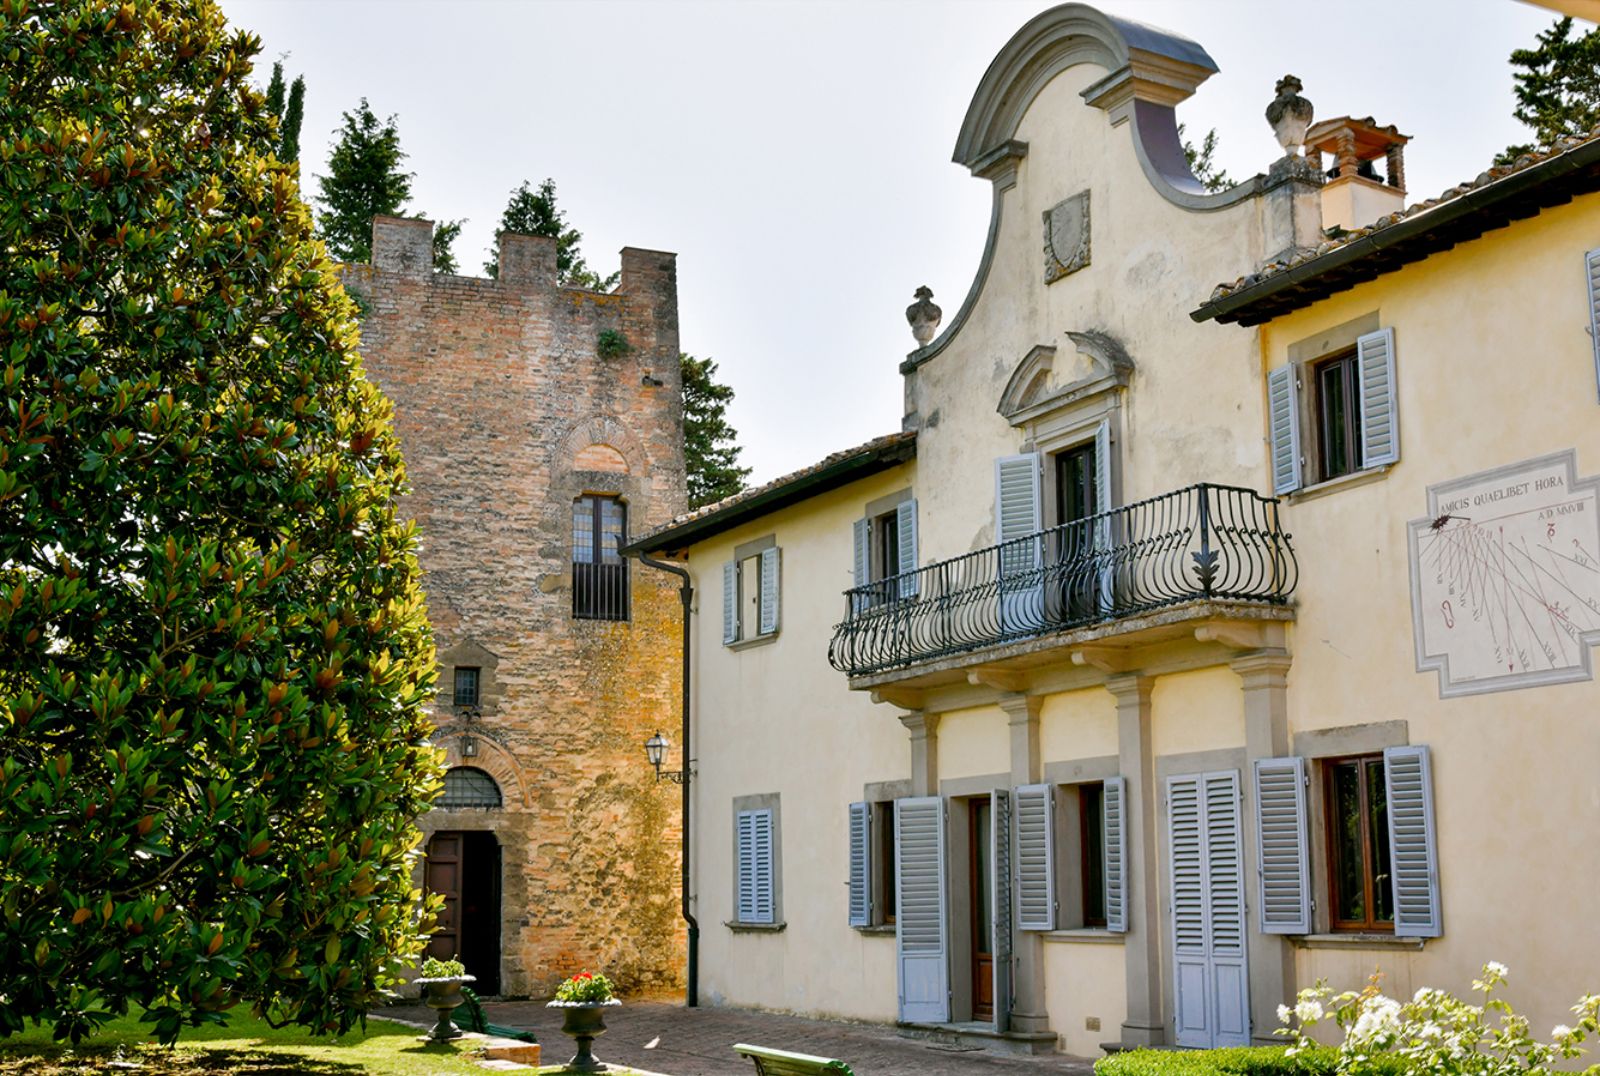 Exterior of Villa di Renai in Tuscany